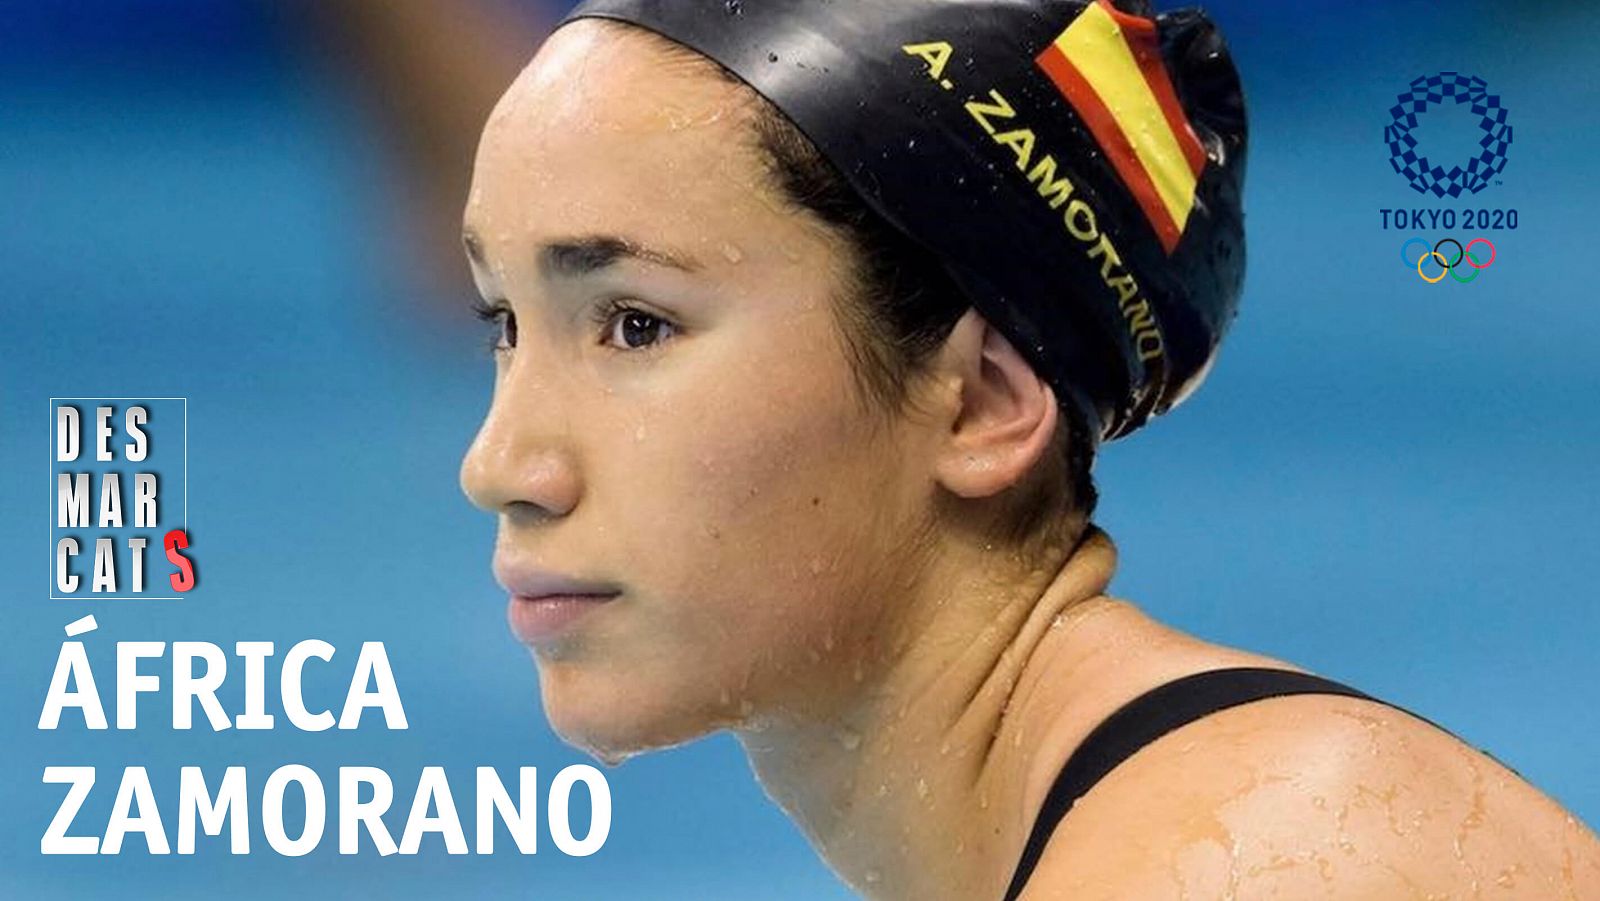 Desmarcats | África Zamorano, nedadora del CN Sant Andreu - RTVE Catalunya